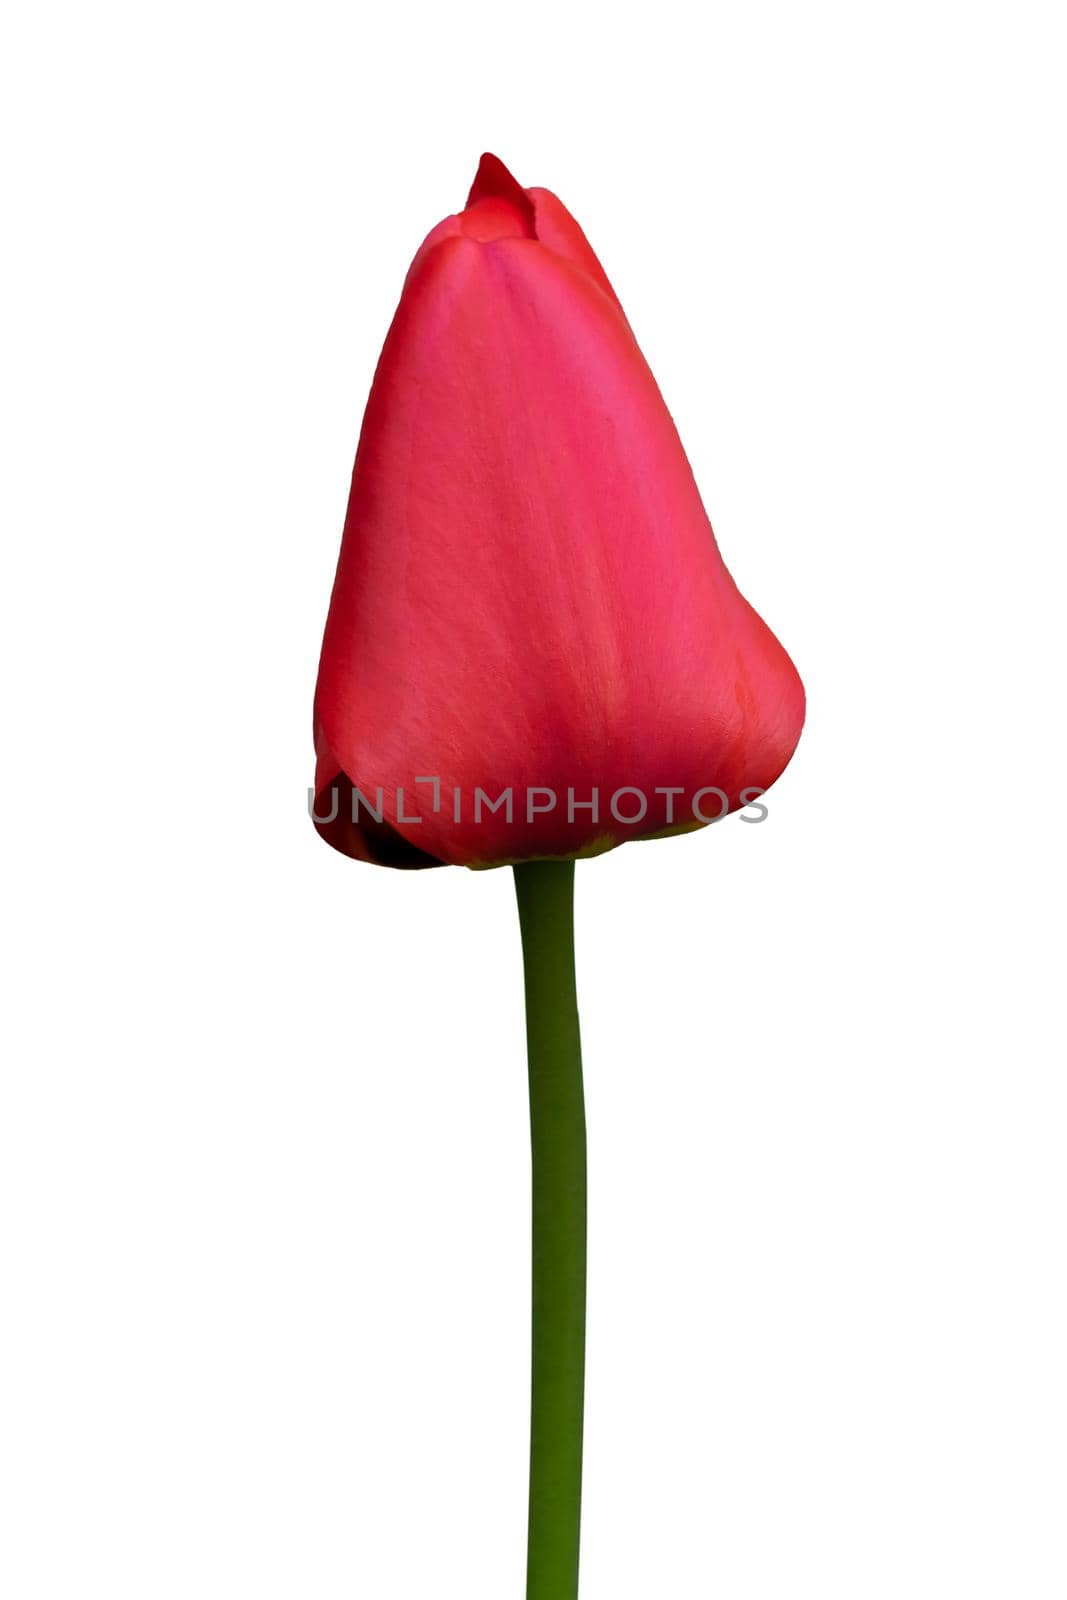 red tulip on a white background close up by Serhii_Voroshchuk